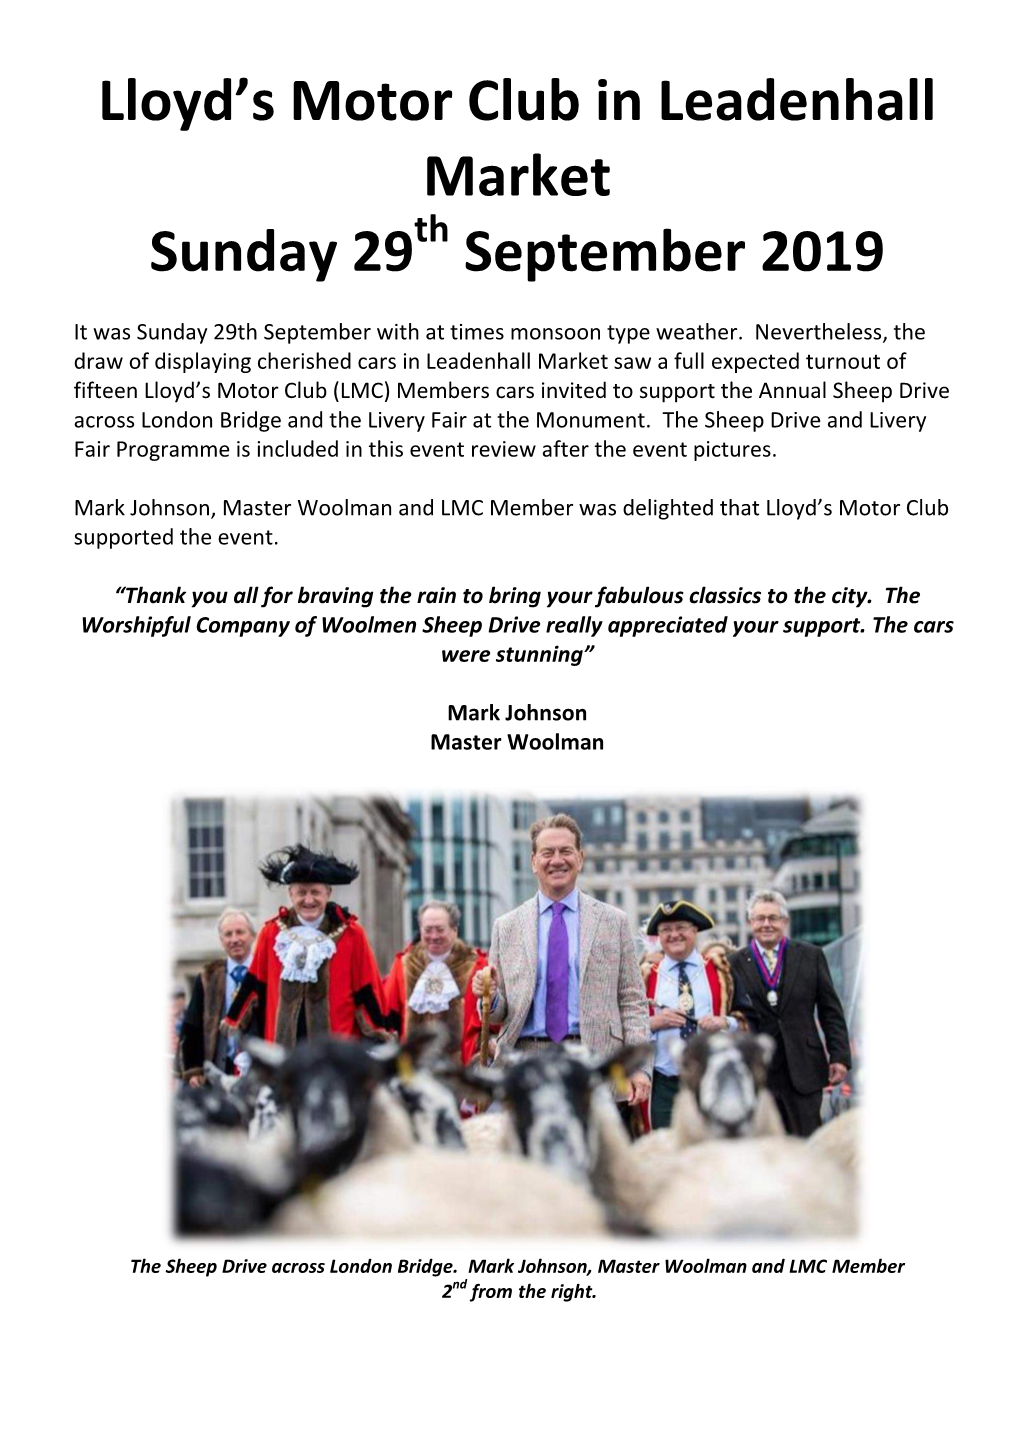 Lloyd's Motor Club in Leadenhall Market Sunday 29 September 2019